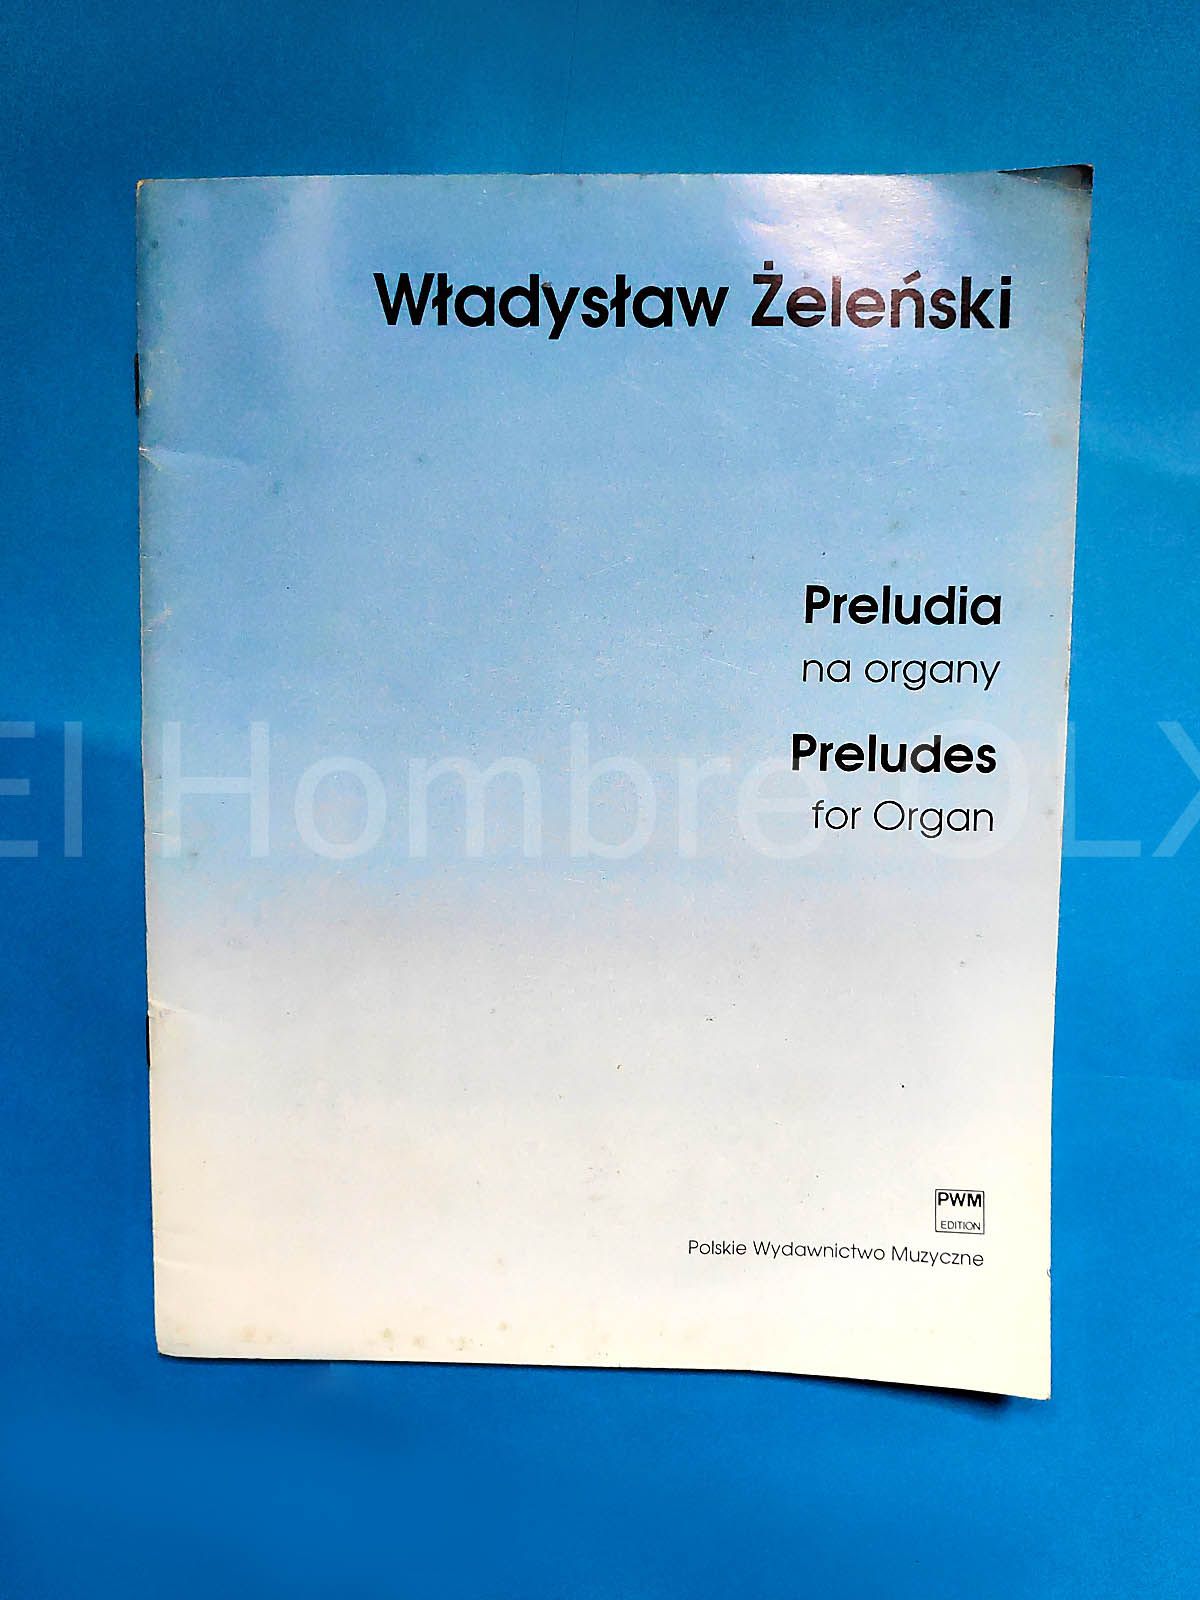 Preludia na organy Władysław Żeleński PWM